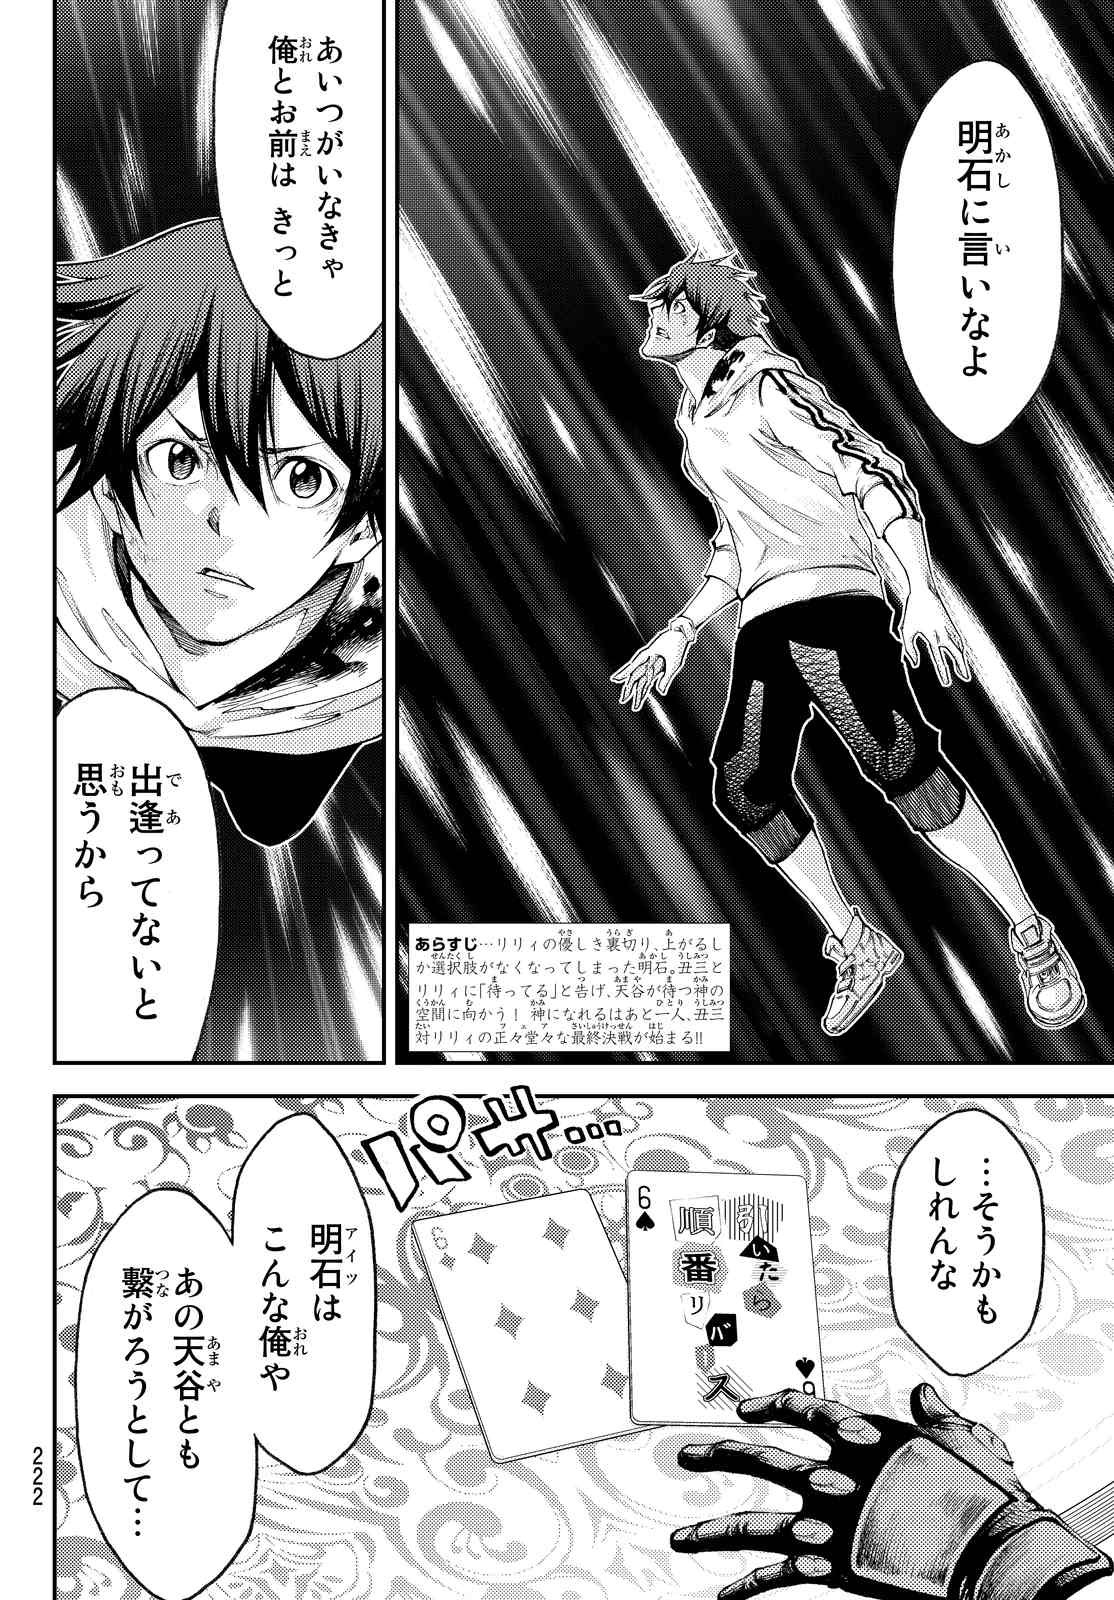 Kamisama no Ituori - Chapter 178 - Page 2